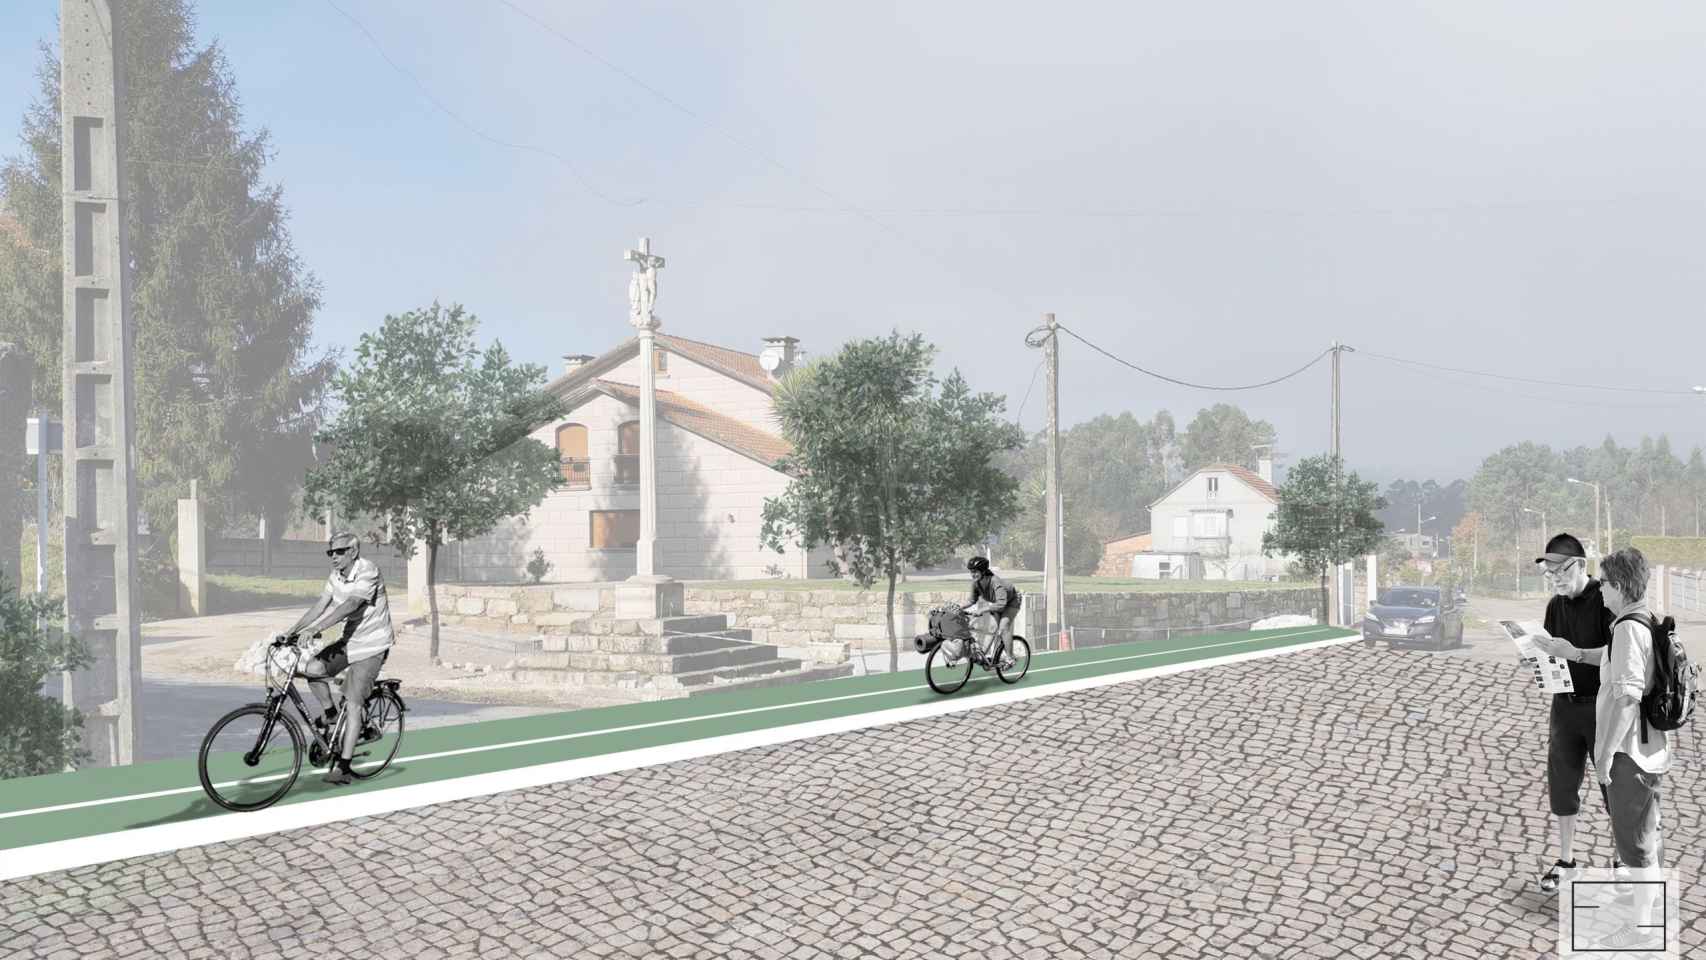 Diseño del nuevo carril bici en Mos (Pontevedra).